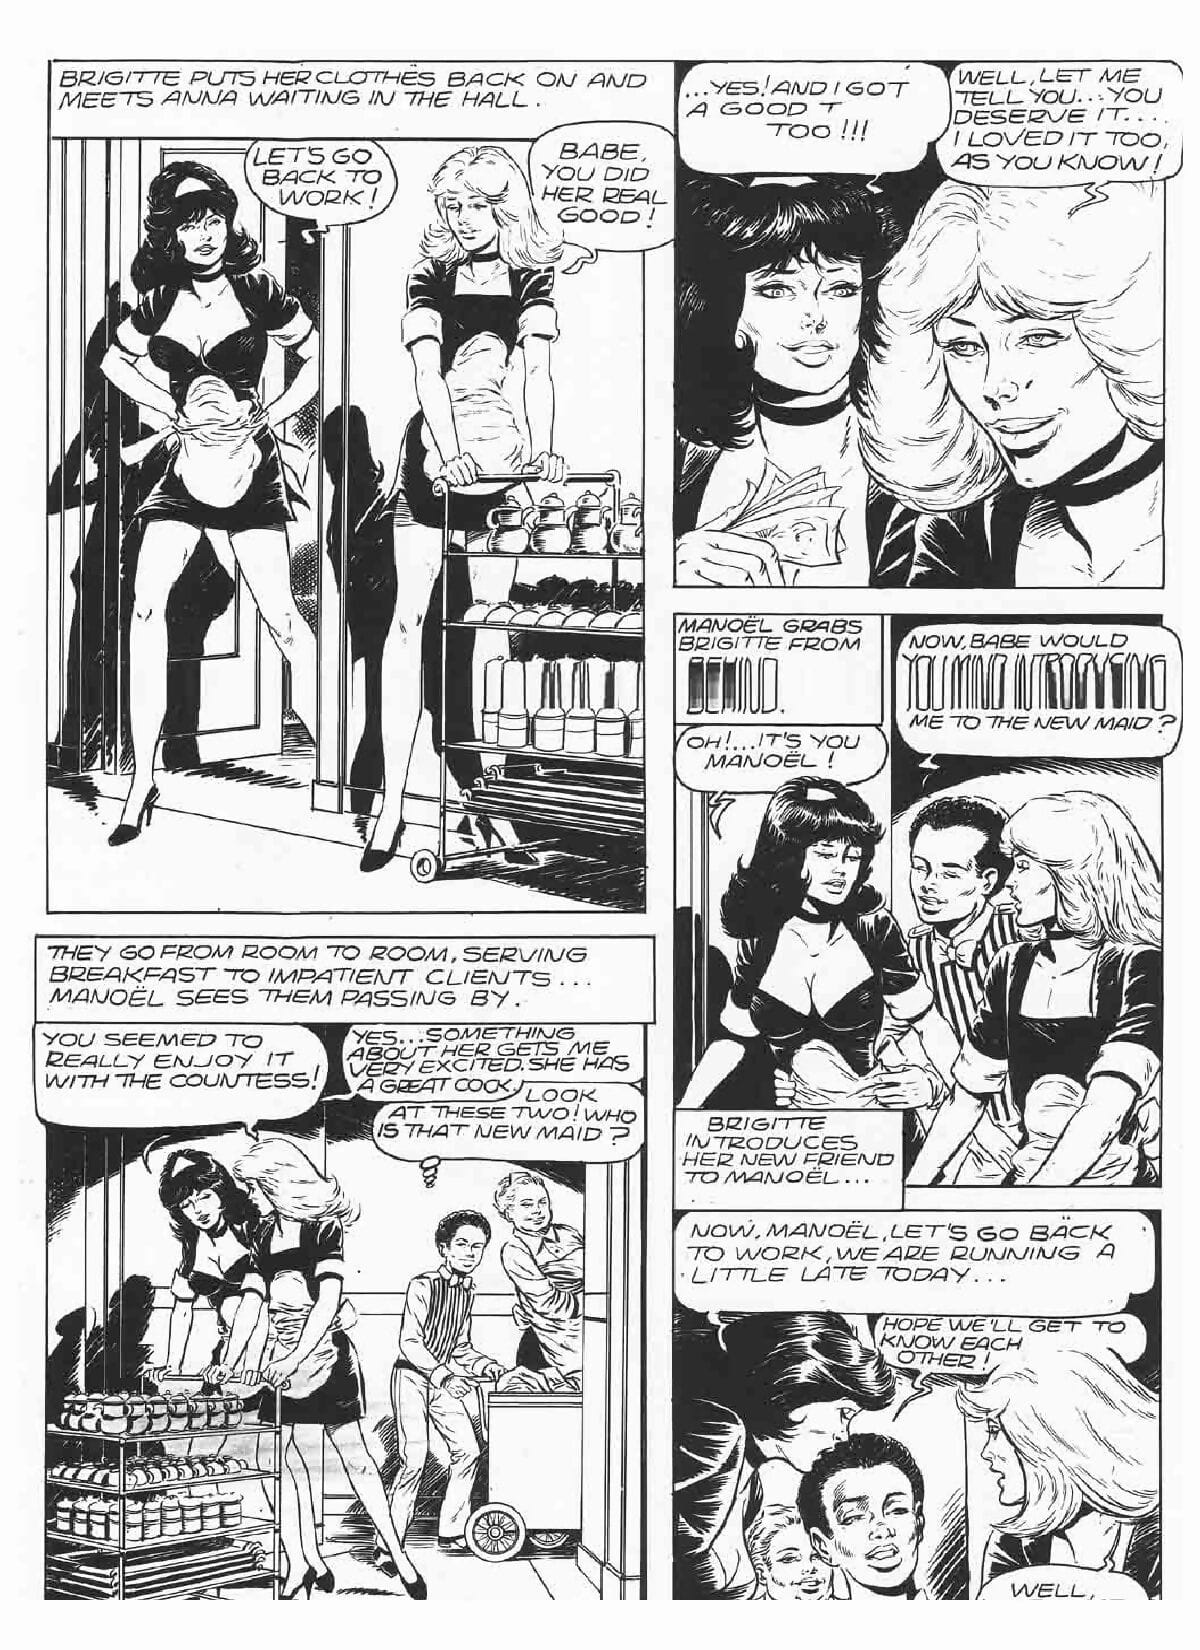 Brigitte De Luxe Maid #3 - part 2 page 1